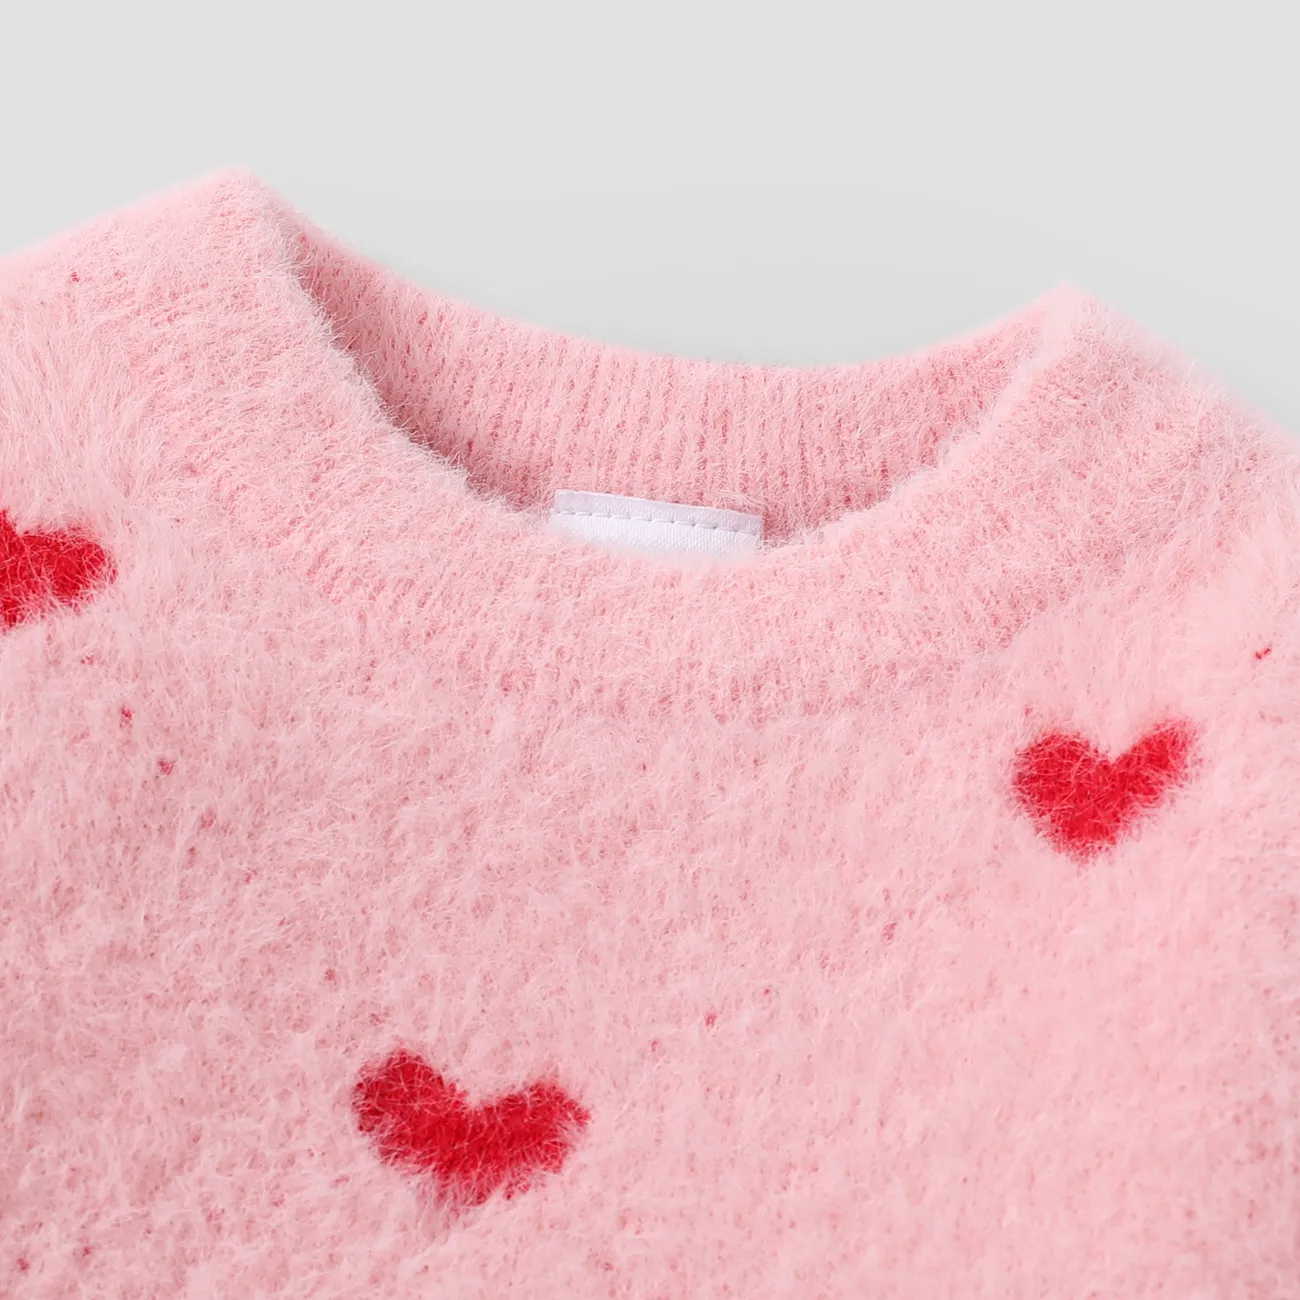  Suéter em forma de coração doce das meninas  Rosa big image 1